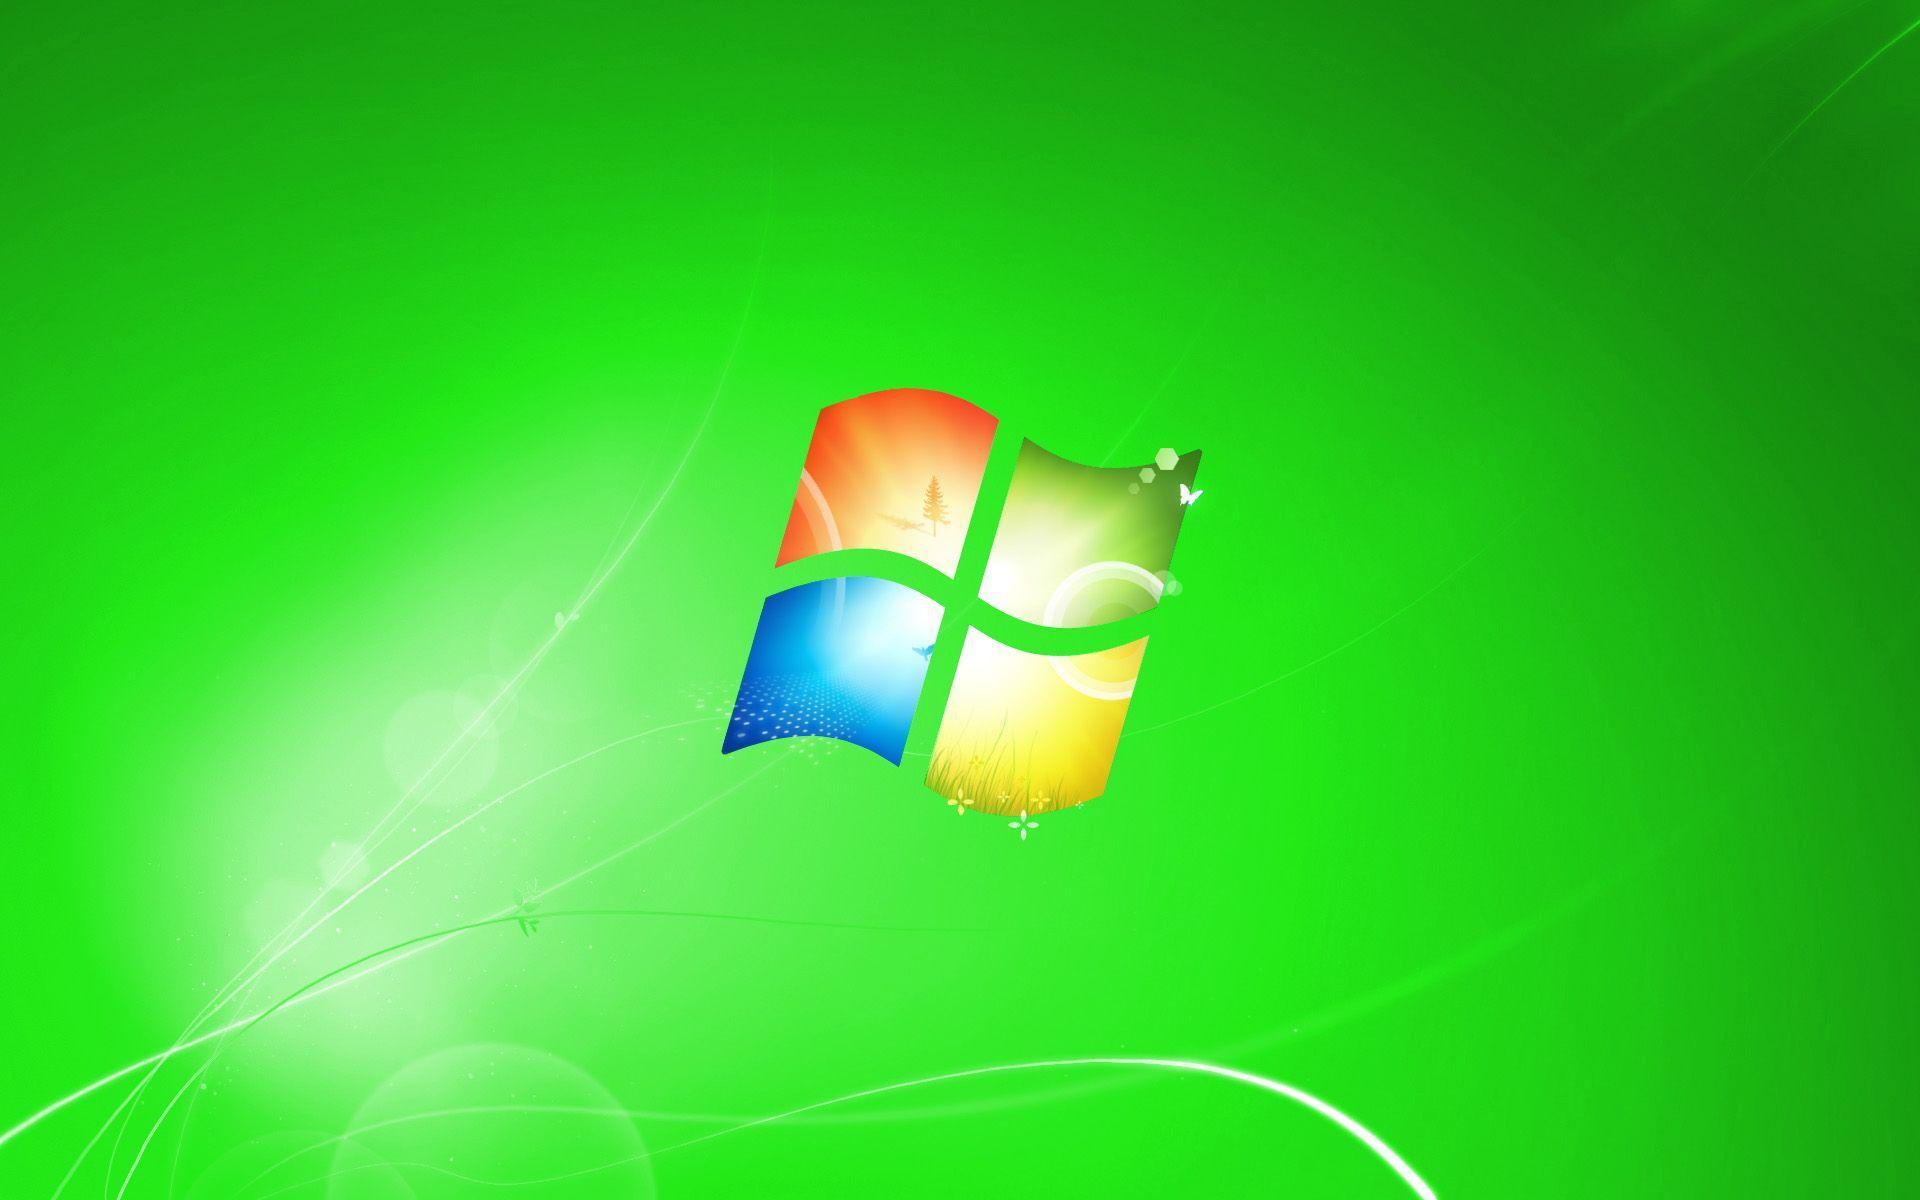 Windows Background Image